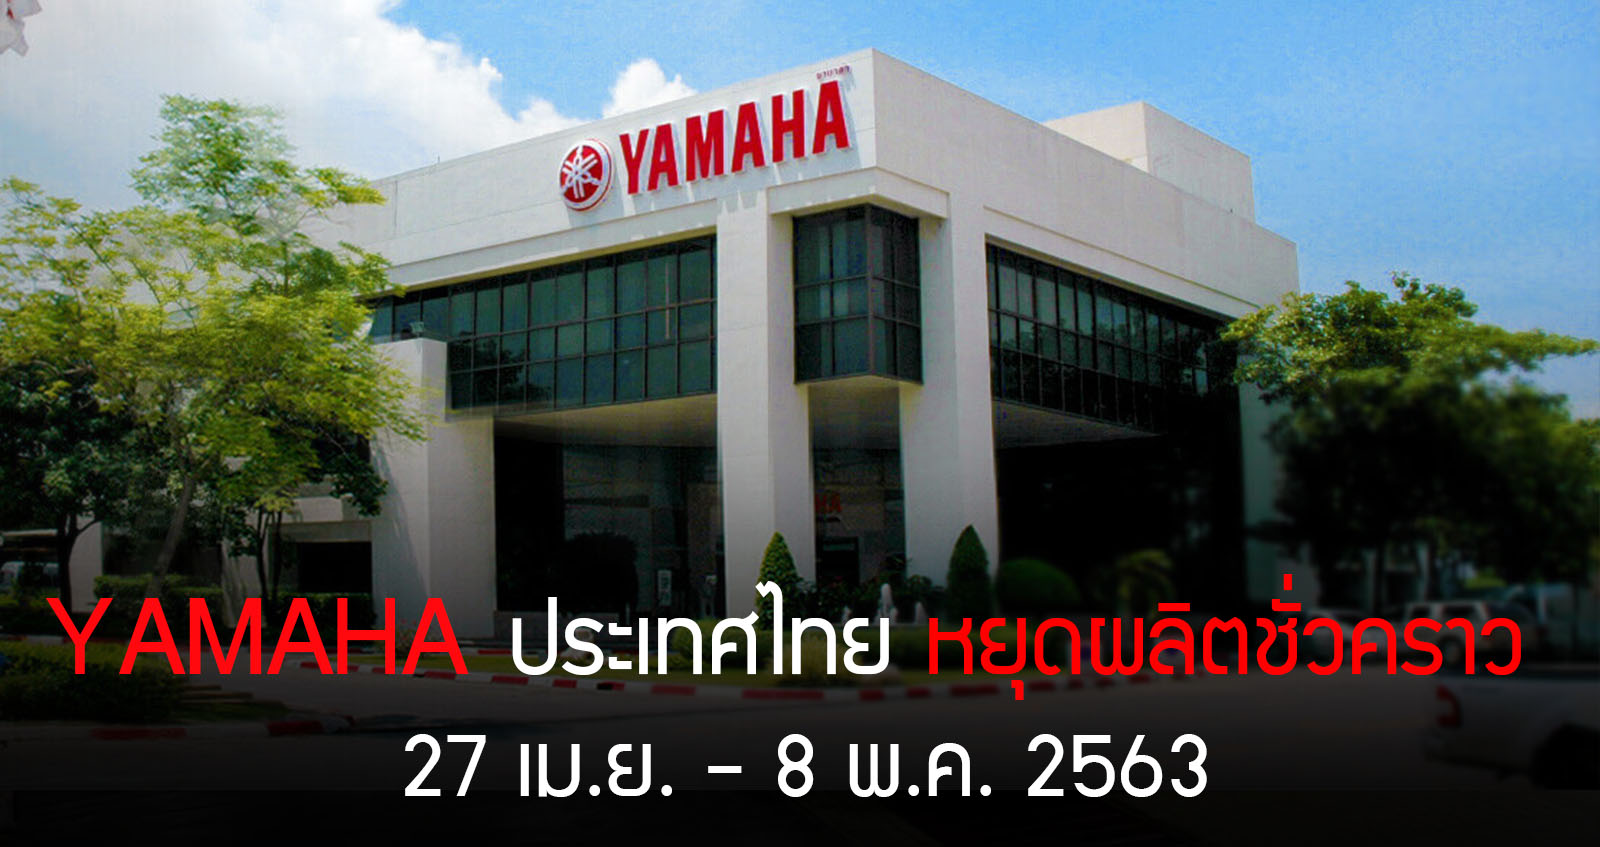 YAMAHA ประเทศไทย หยุดผลิตชั่วคราว 27 เมษา – 8 พฤษภาคม 2563